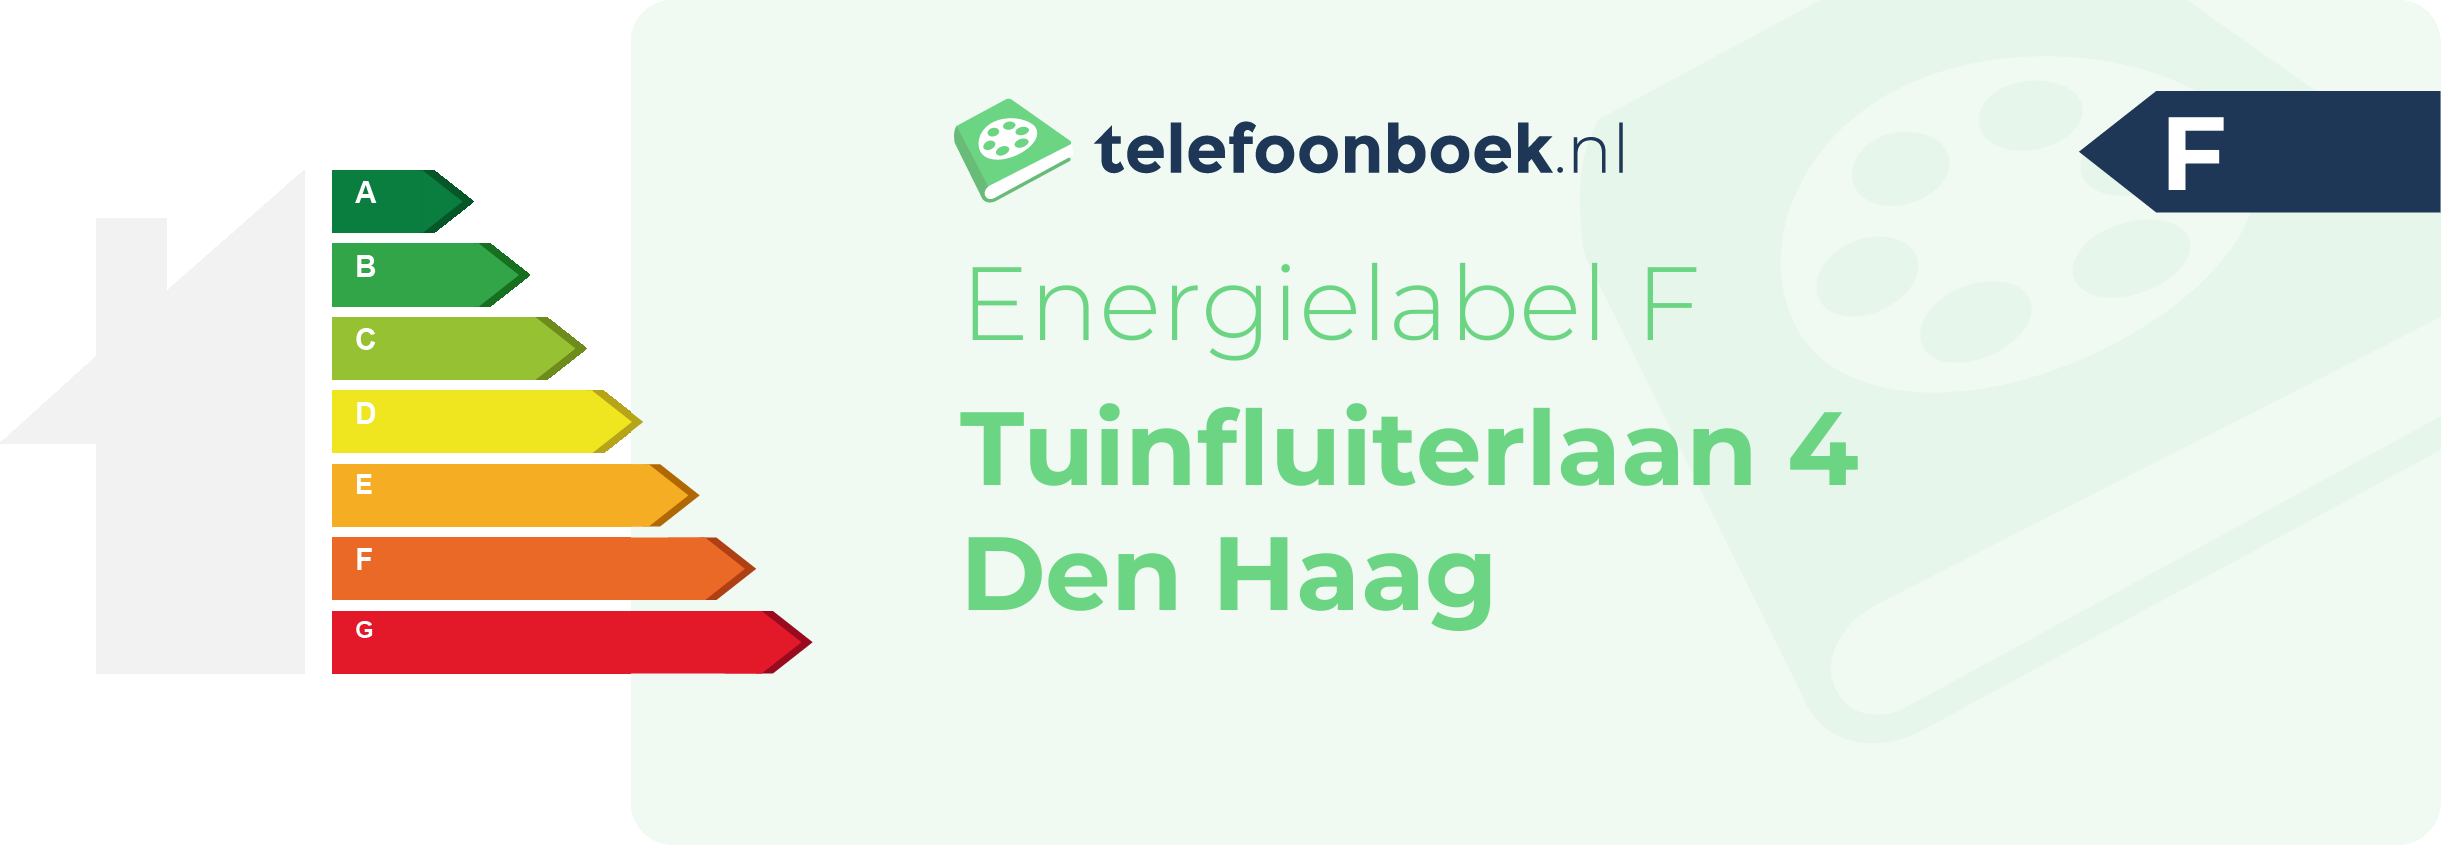 Energielabel Tuinfluiterlaan 4 Den Haag